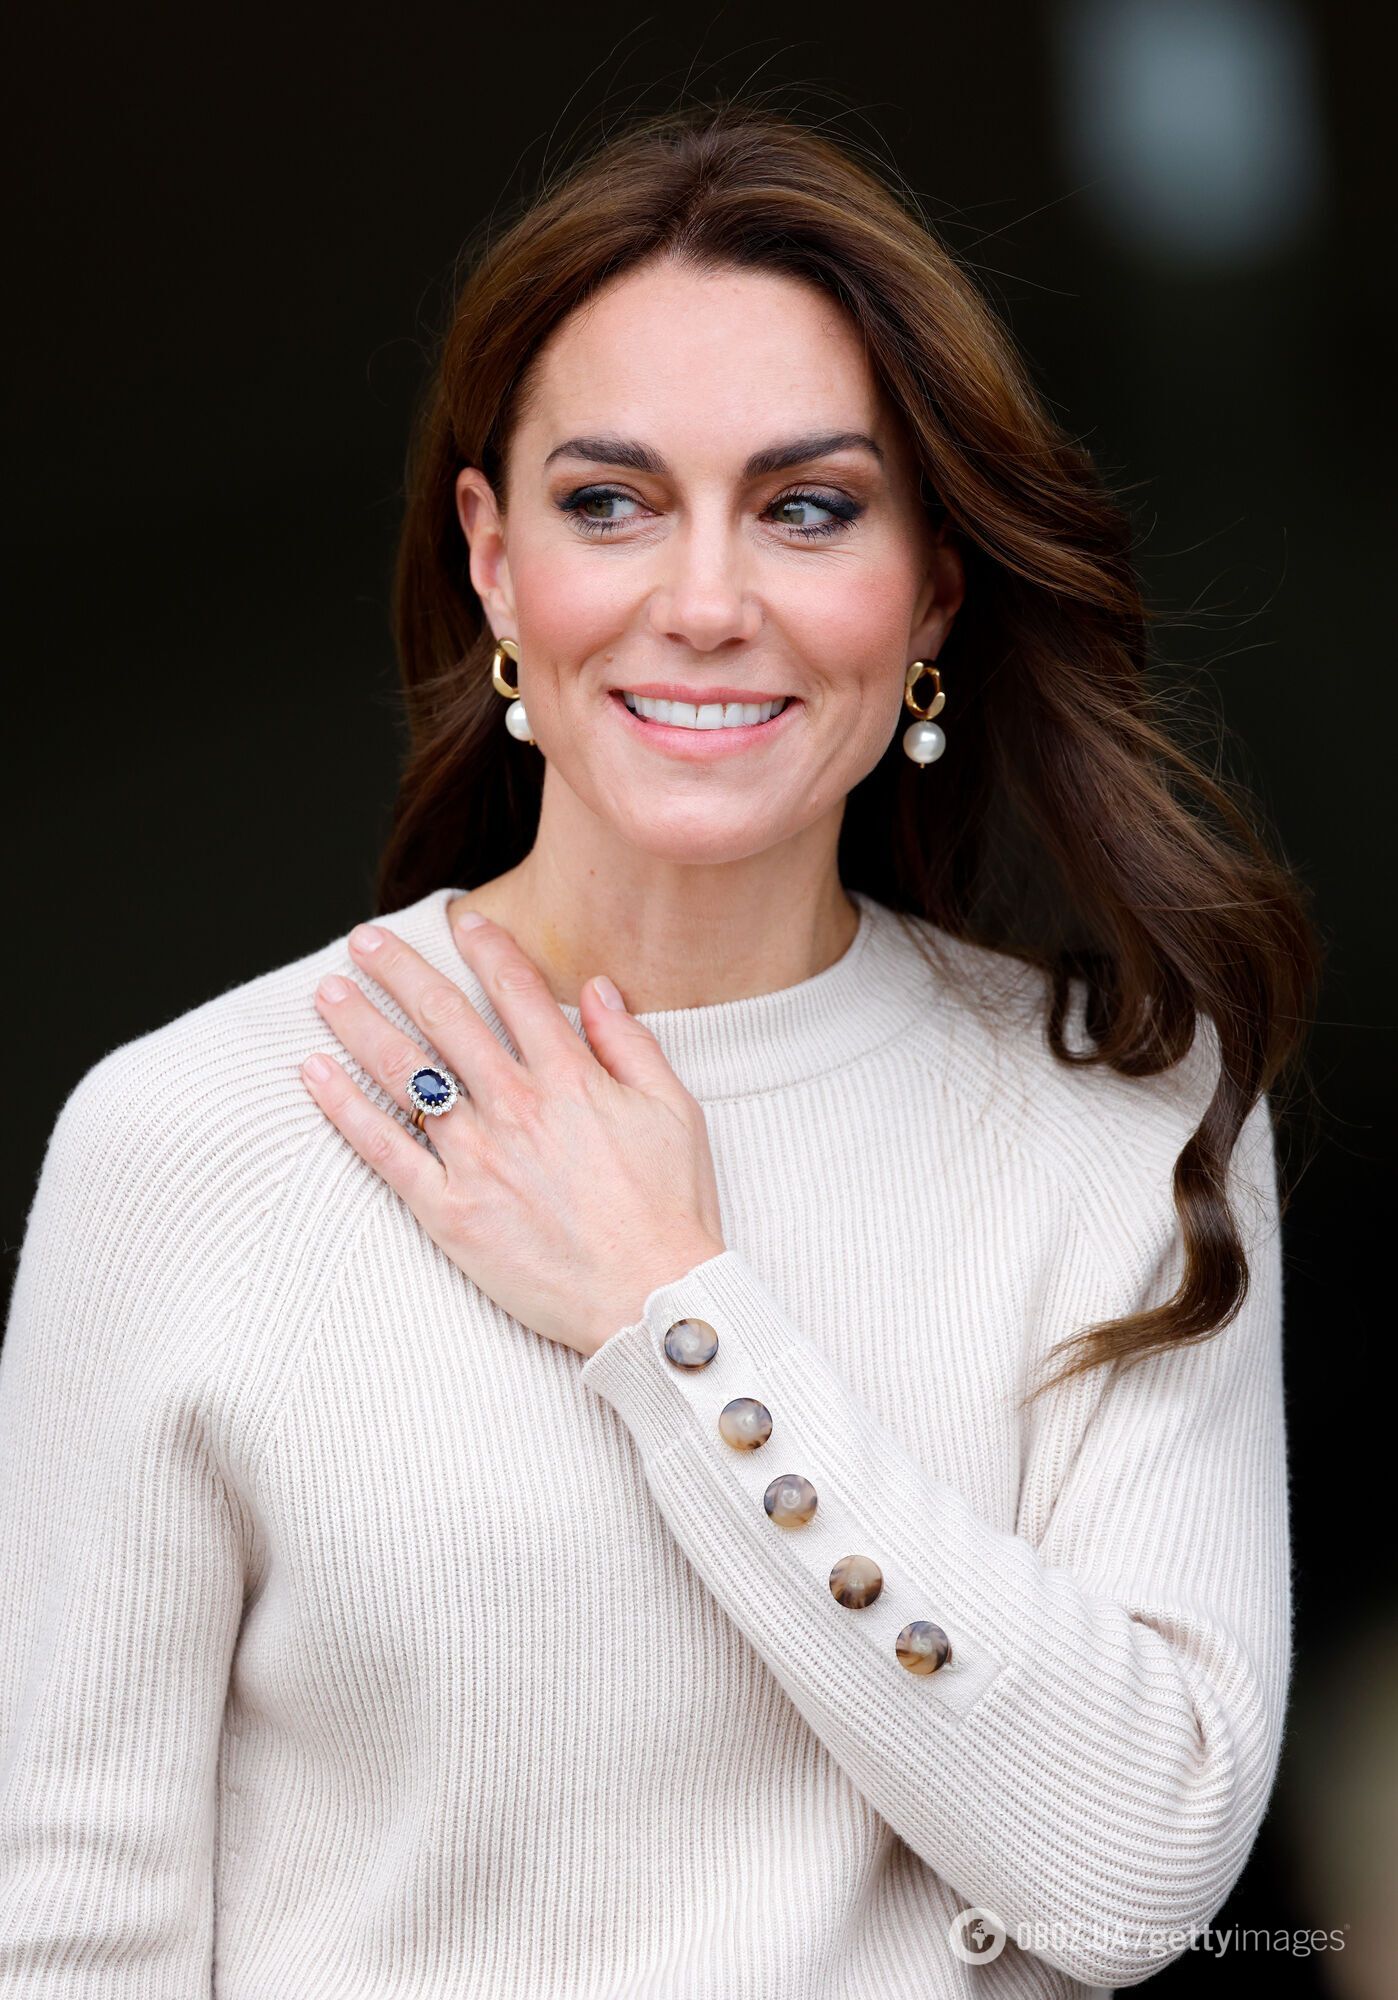 Стало известно, почему принц Уильям никогда не носит обручальное кольцо, хотя Кейт Миддлтон свое не снимает